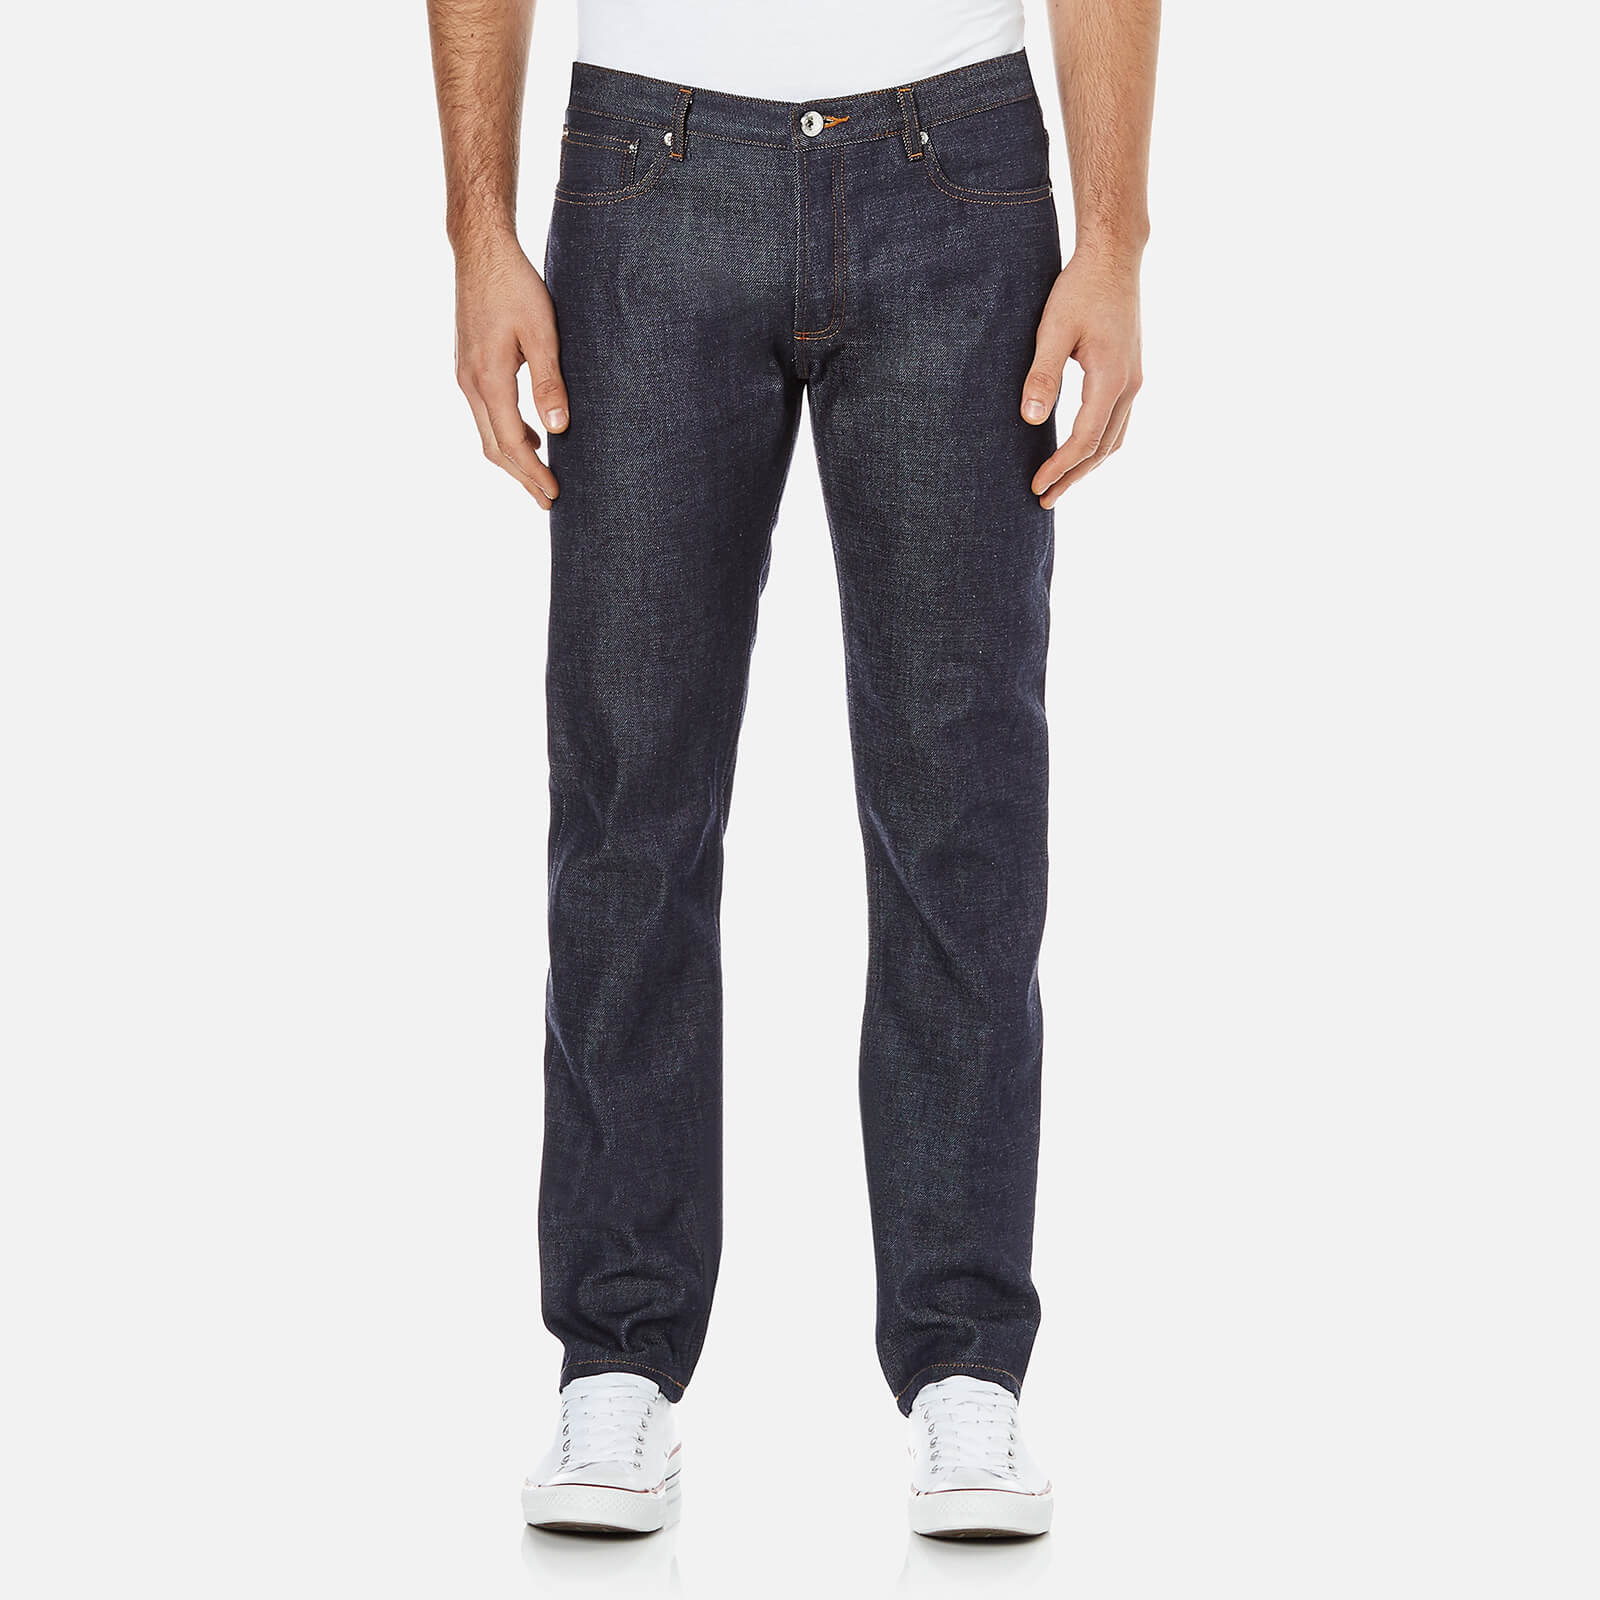 A.P.C. Men's Petit New Standard Mid Rise Jeans - Selvedge Indigo - W34/L32 - Blue